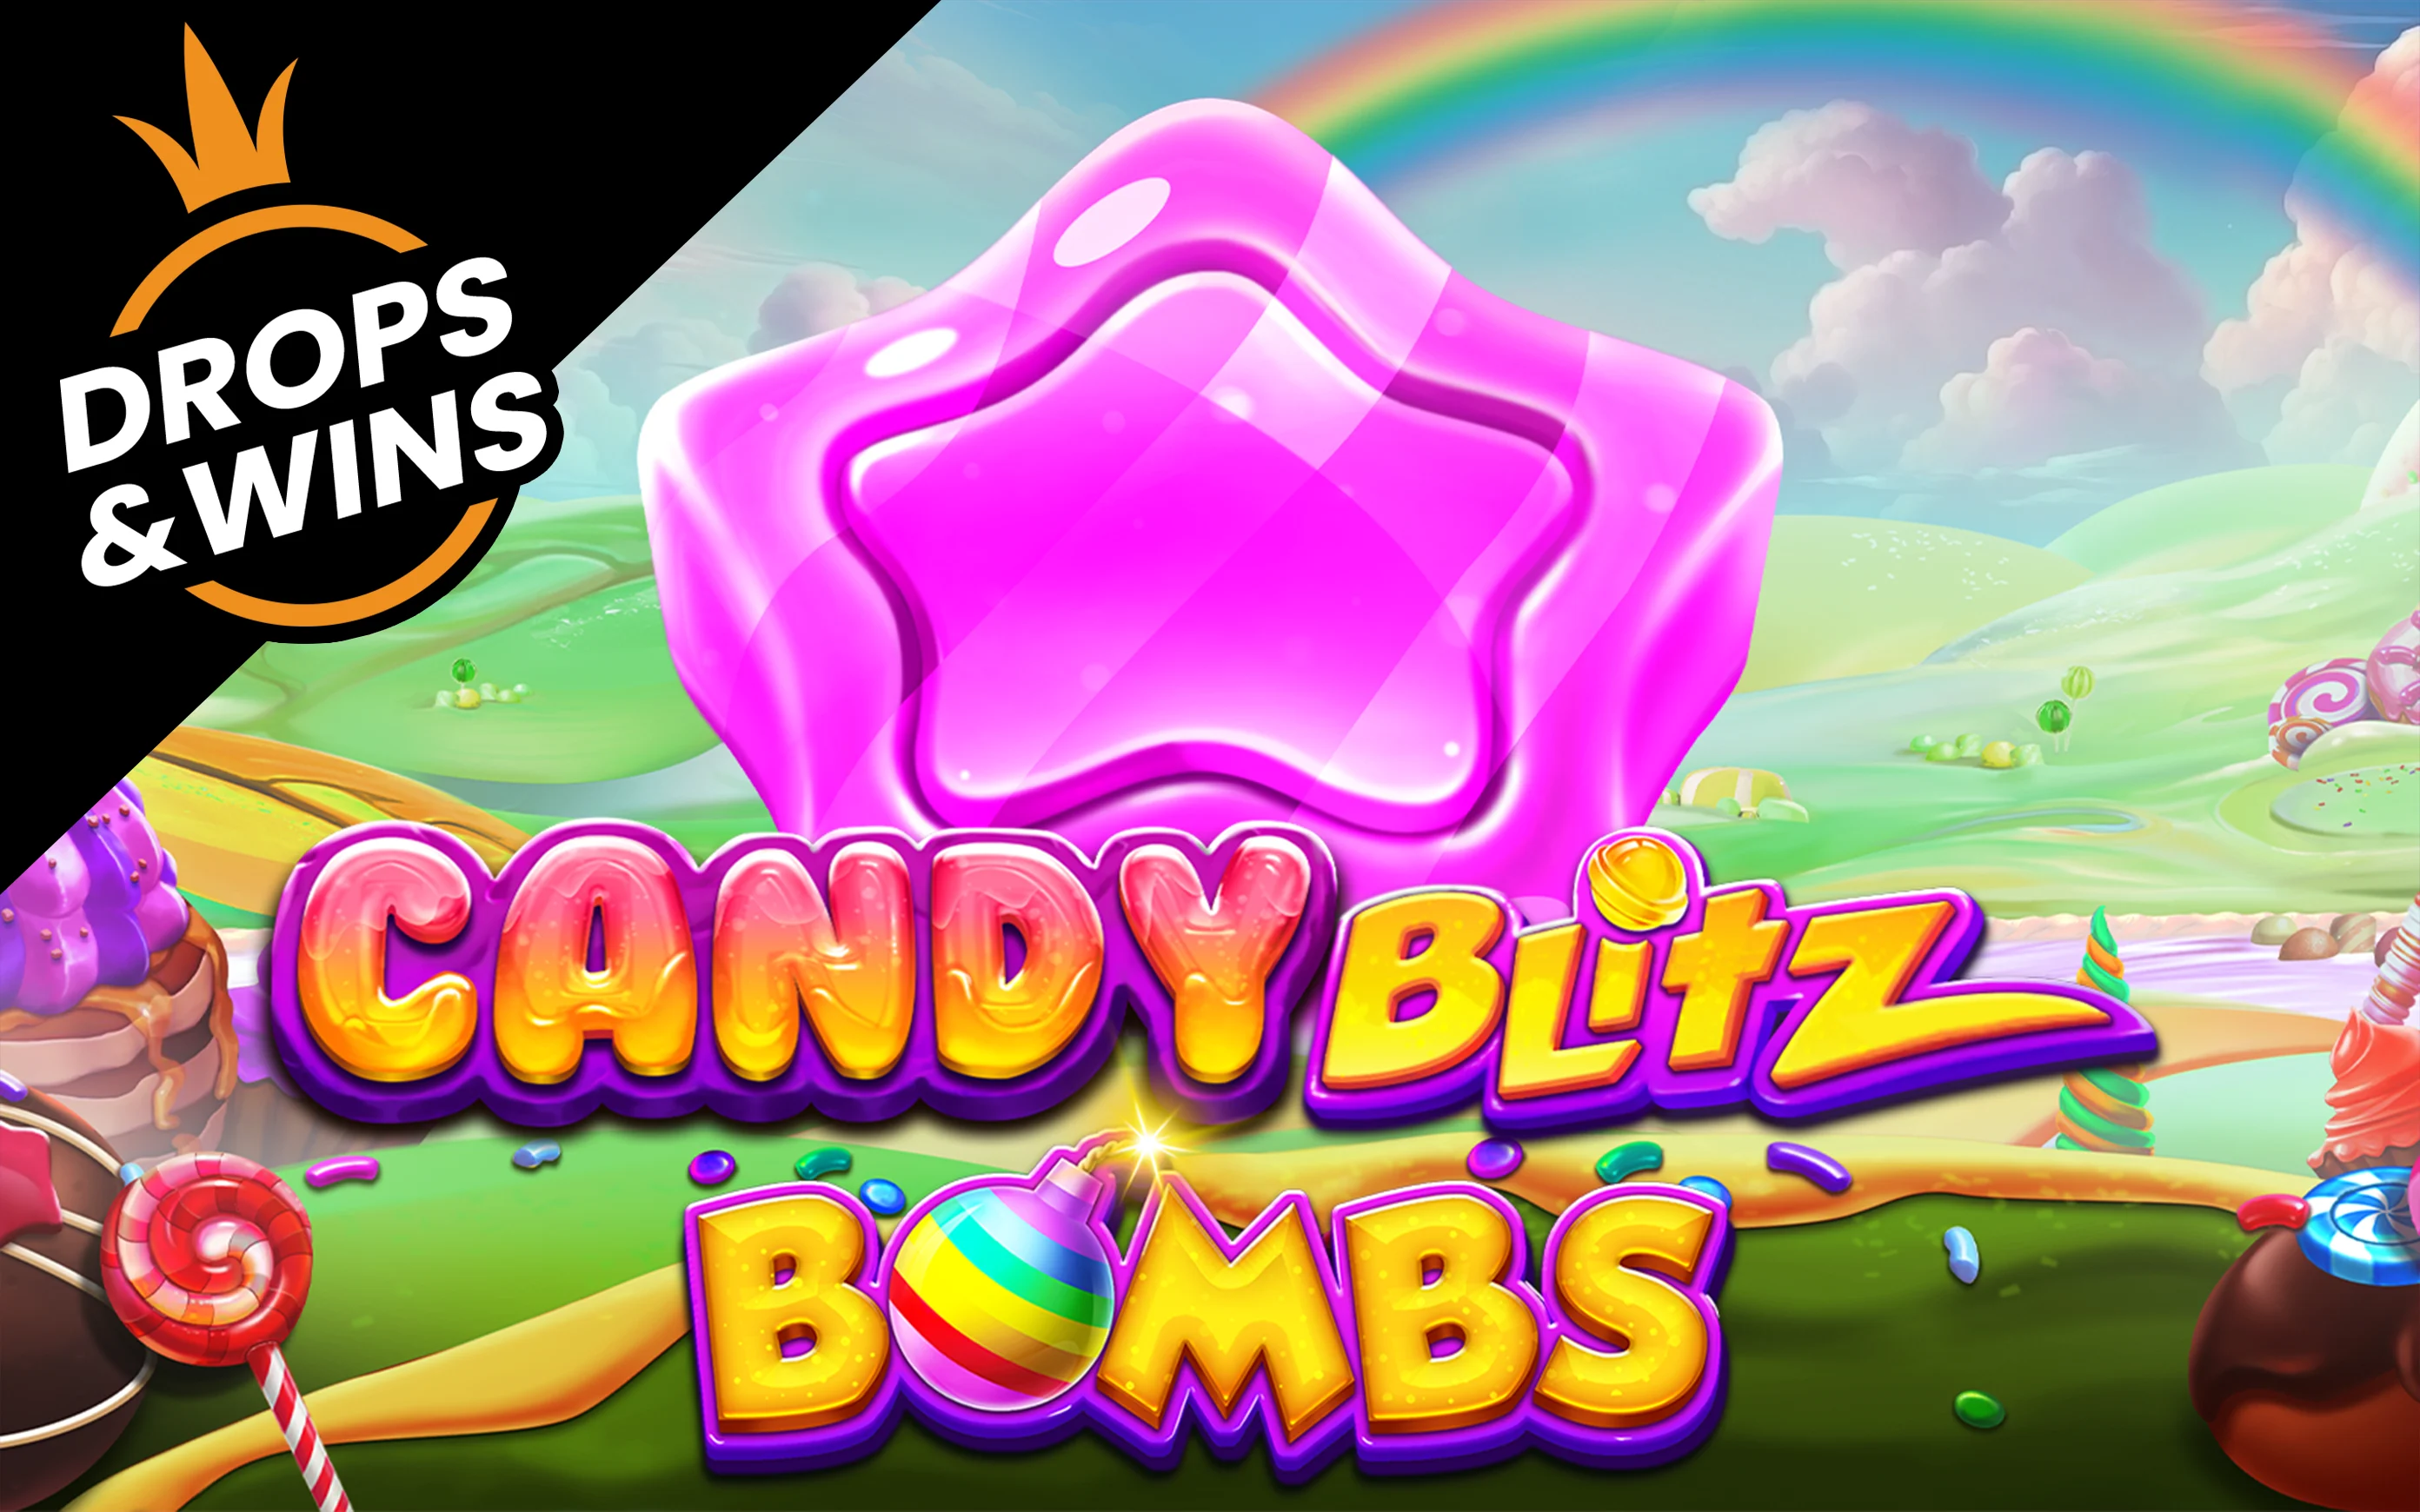 Spil Candy Blitz Bombs på Starcasino.be online kasino
